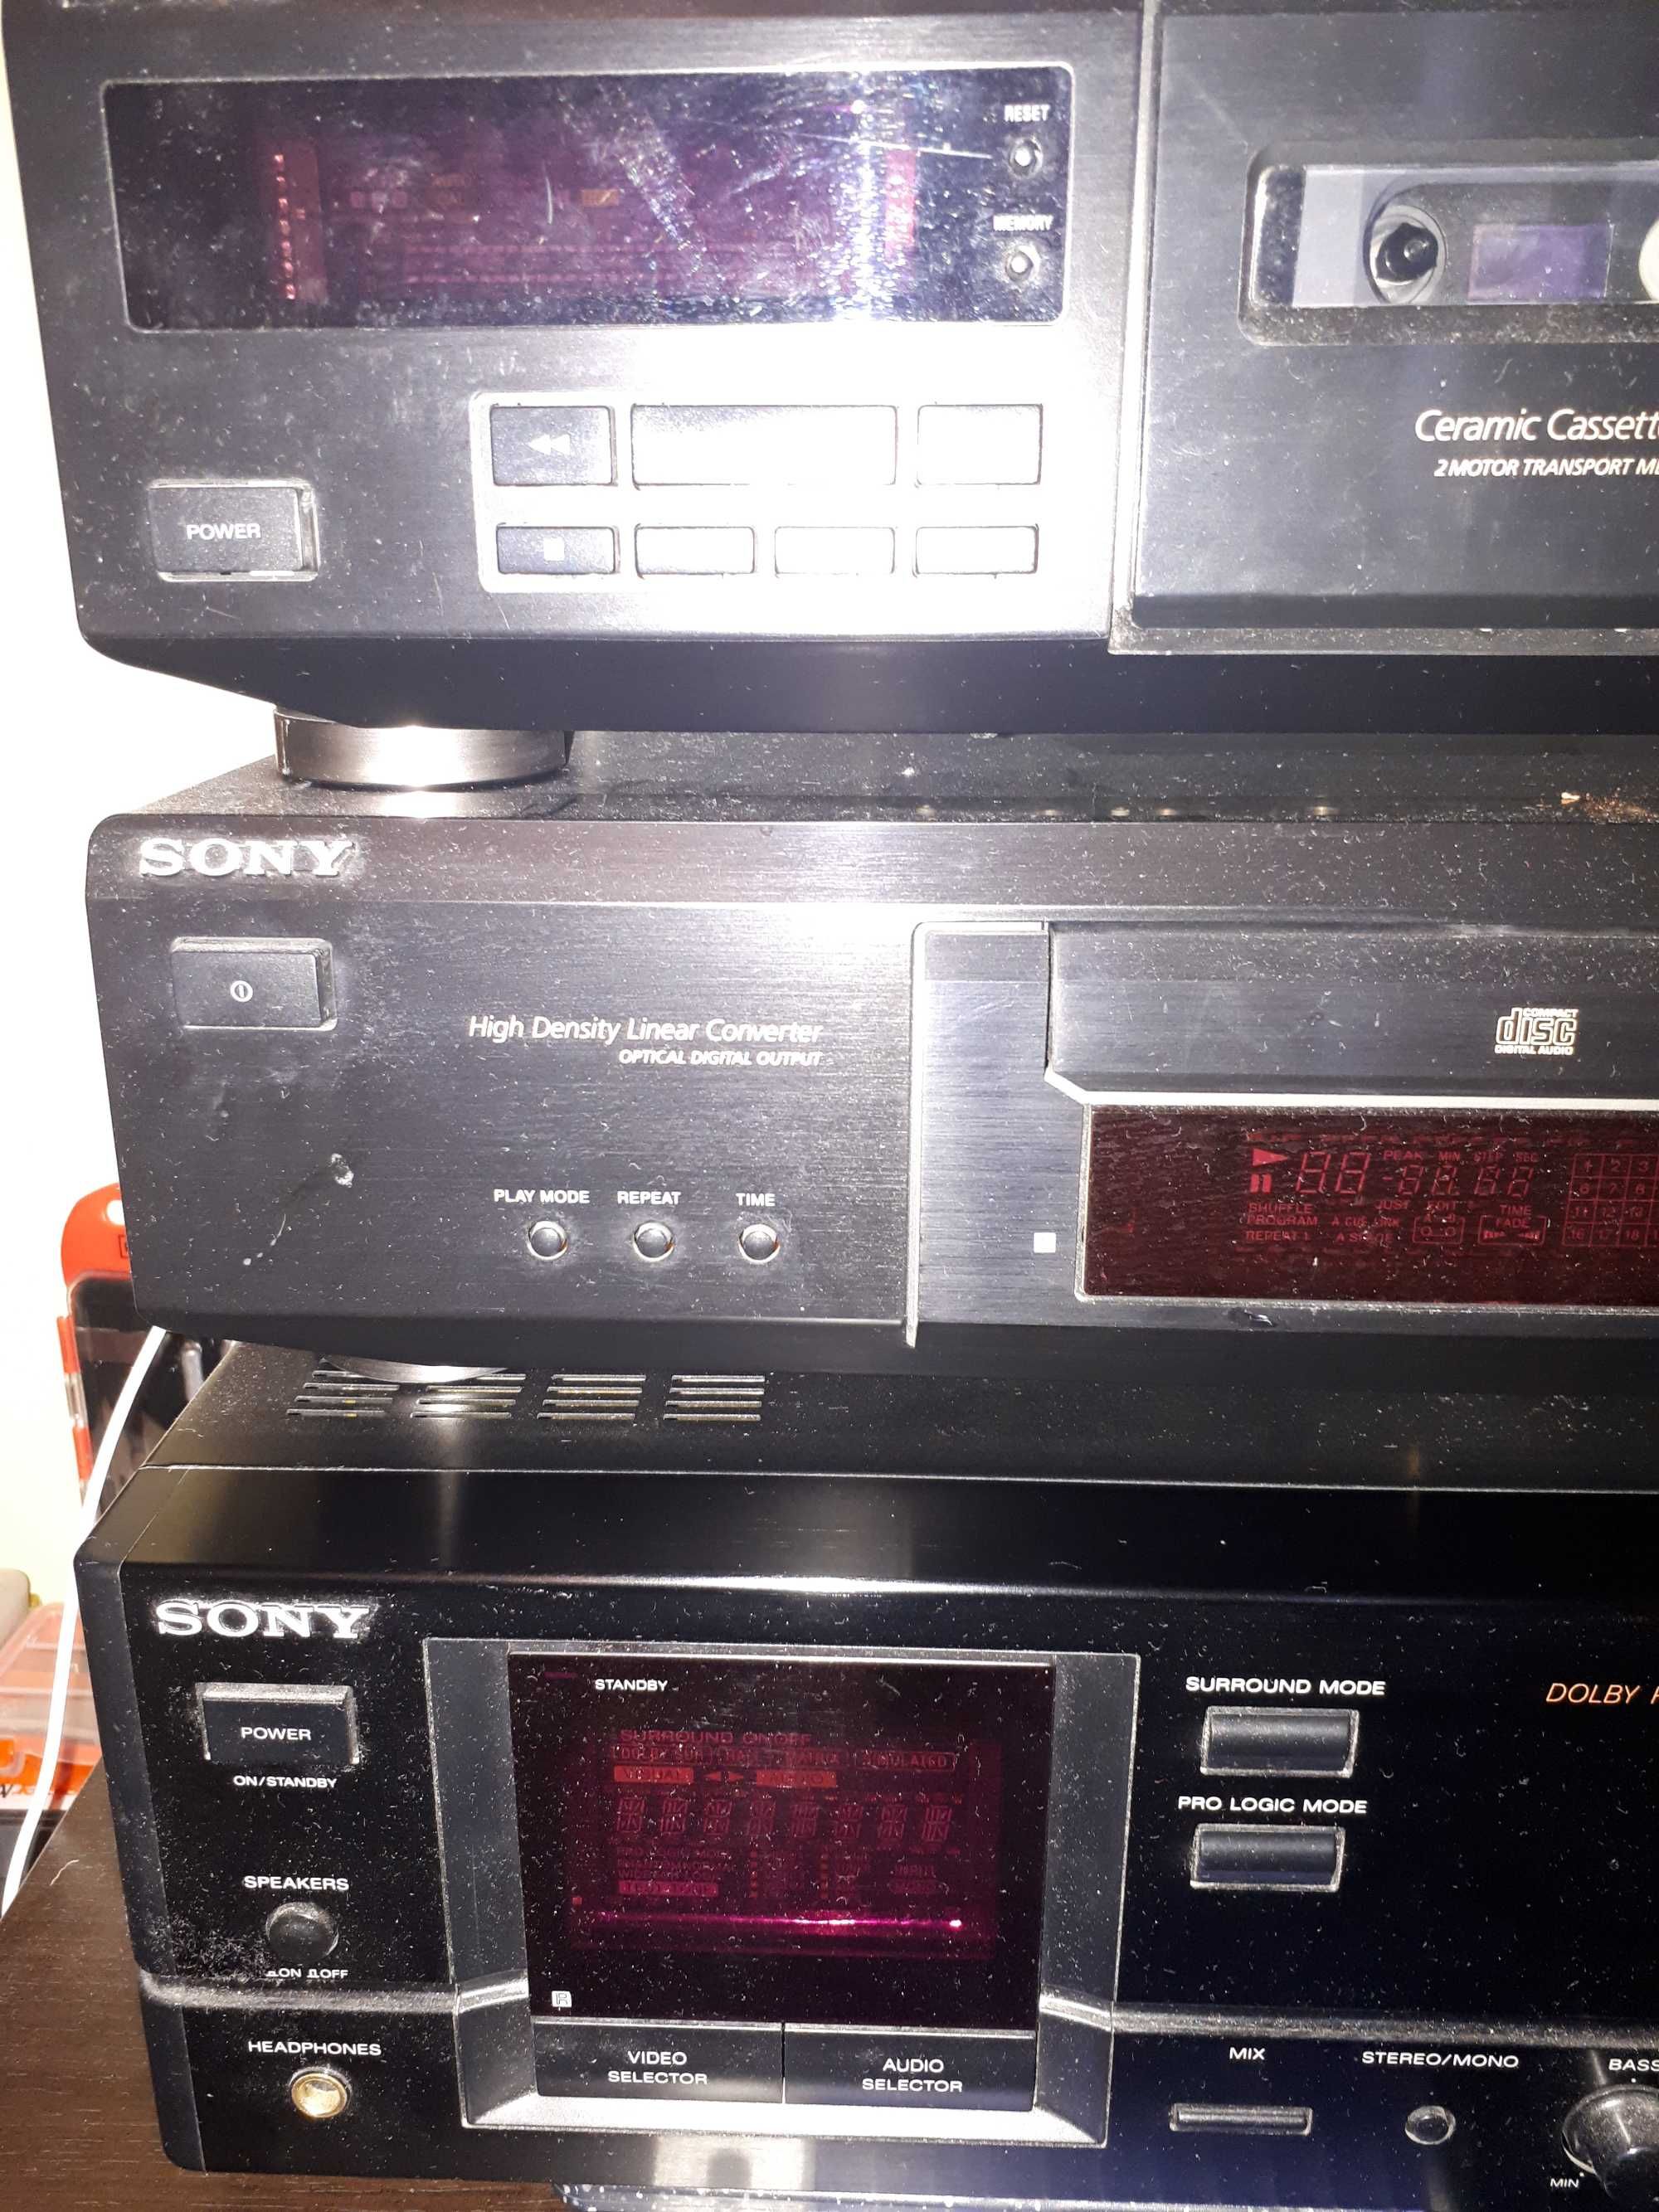 Sony - Amplificator TA-AV570 / CD player CDP-XE330 / Deck TC-KE300